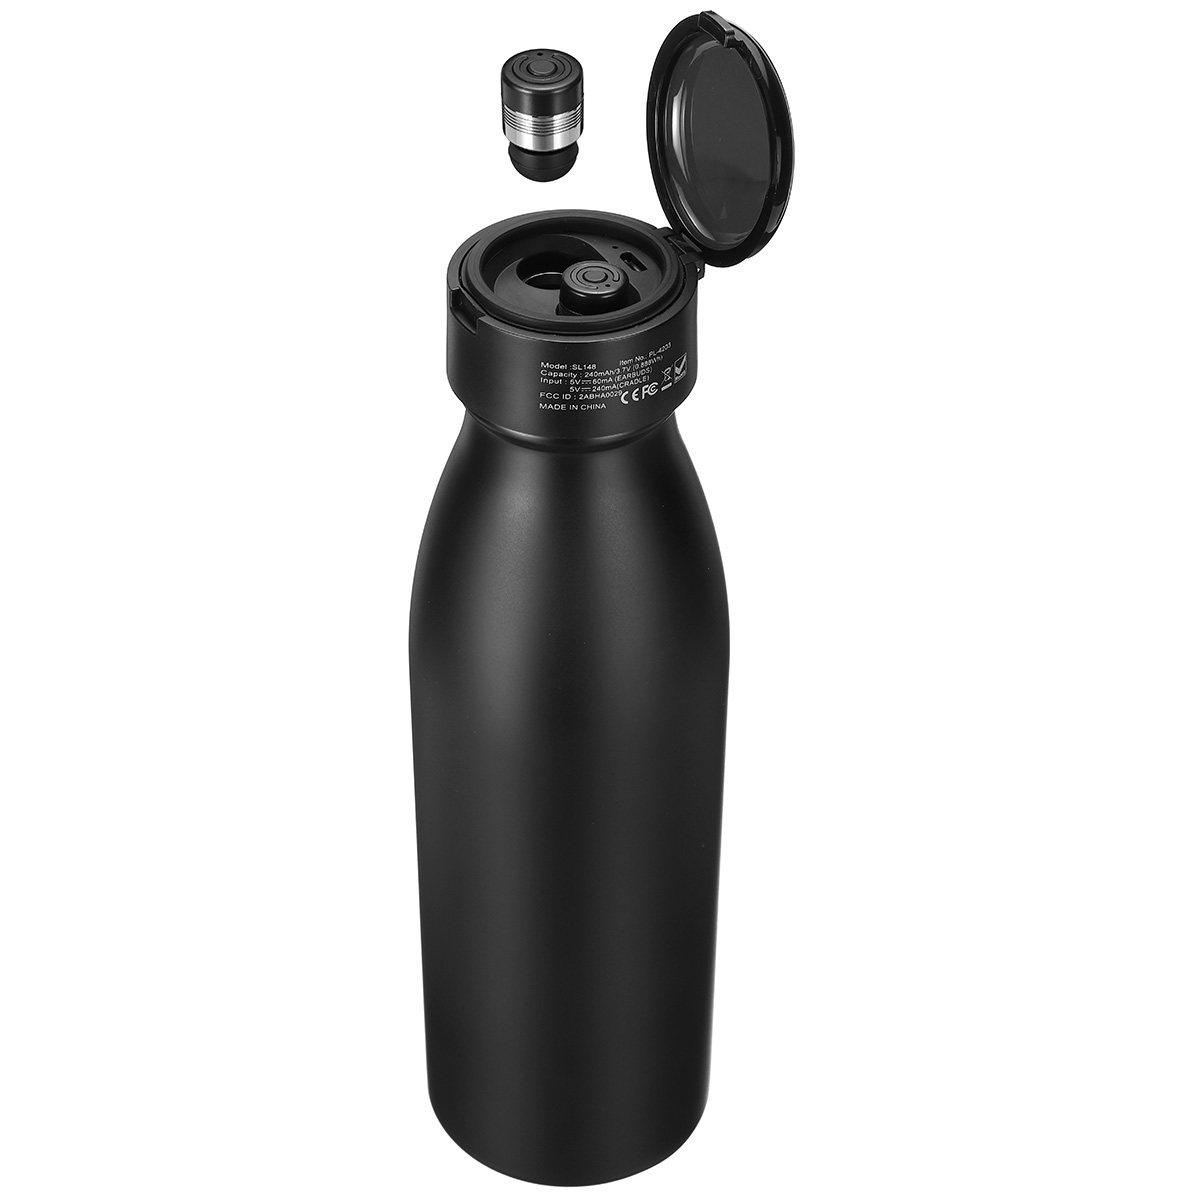 2 em 1 Bluetooth 5.0 580 ml garrafa de água TWS fone de ouvido à prova d 'água verdadeiro fone de ouvido estéreo sem fio com microfone